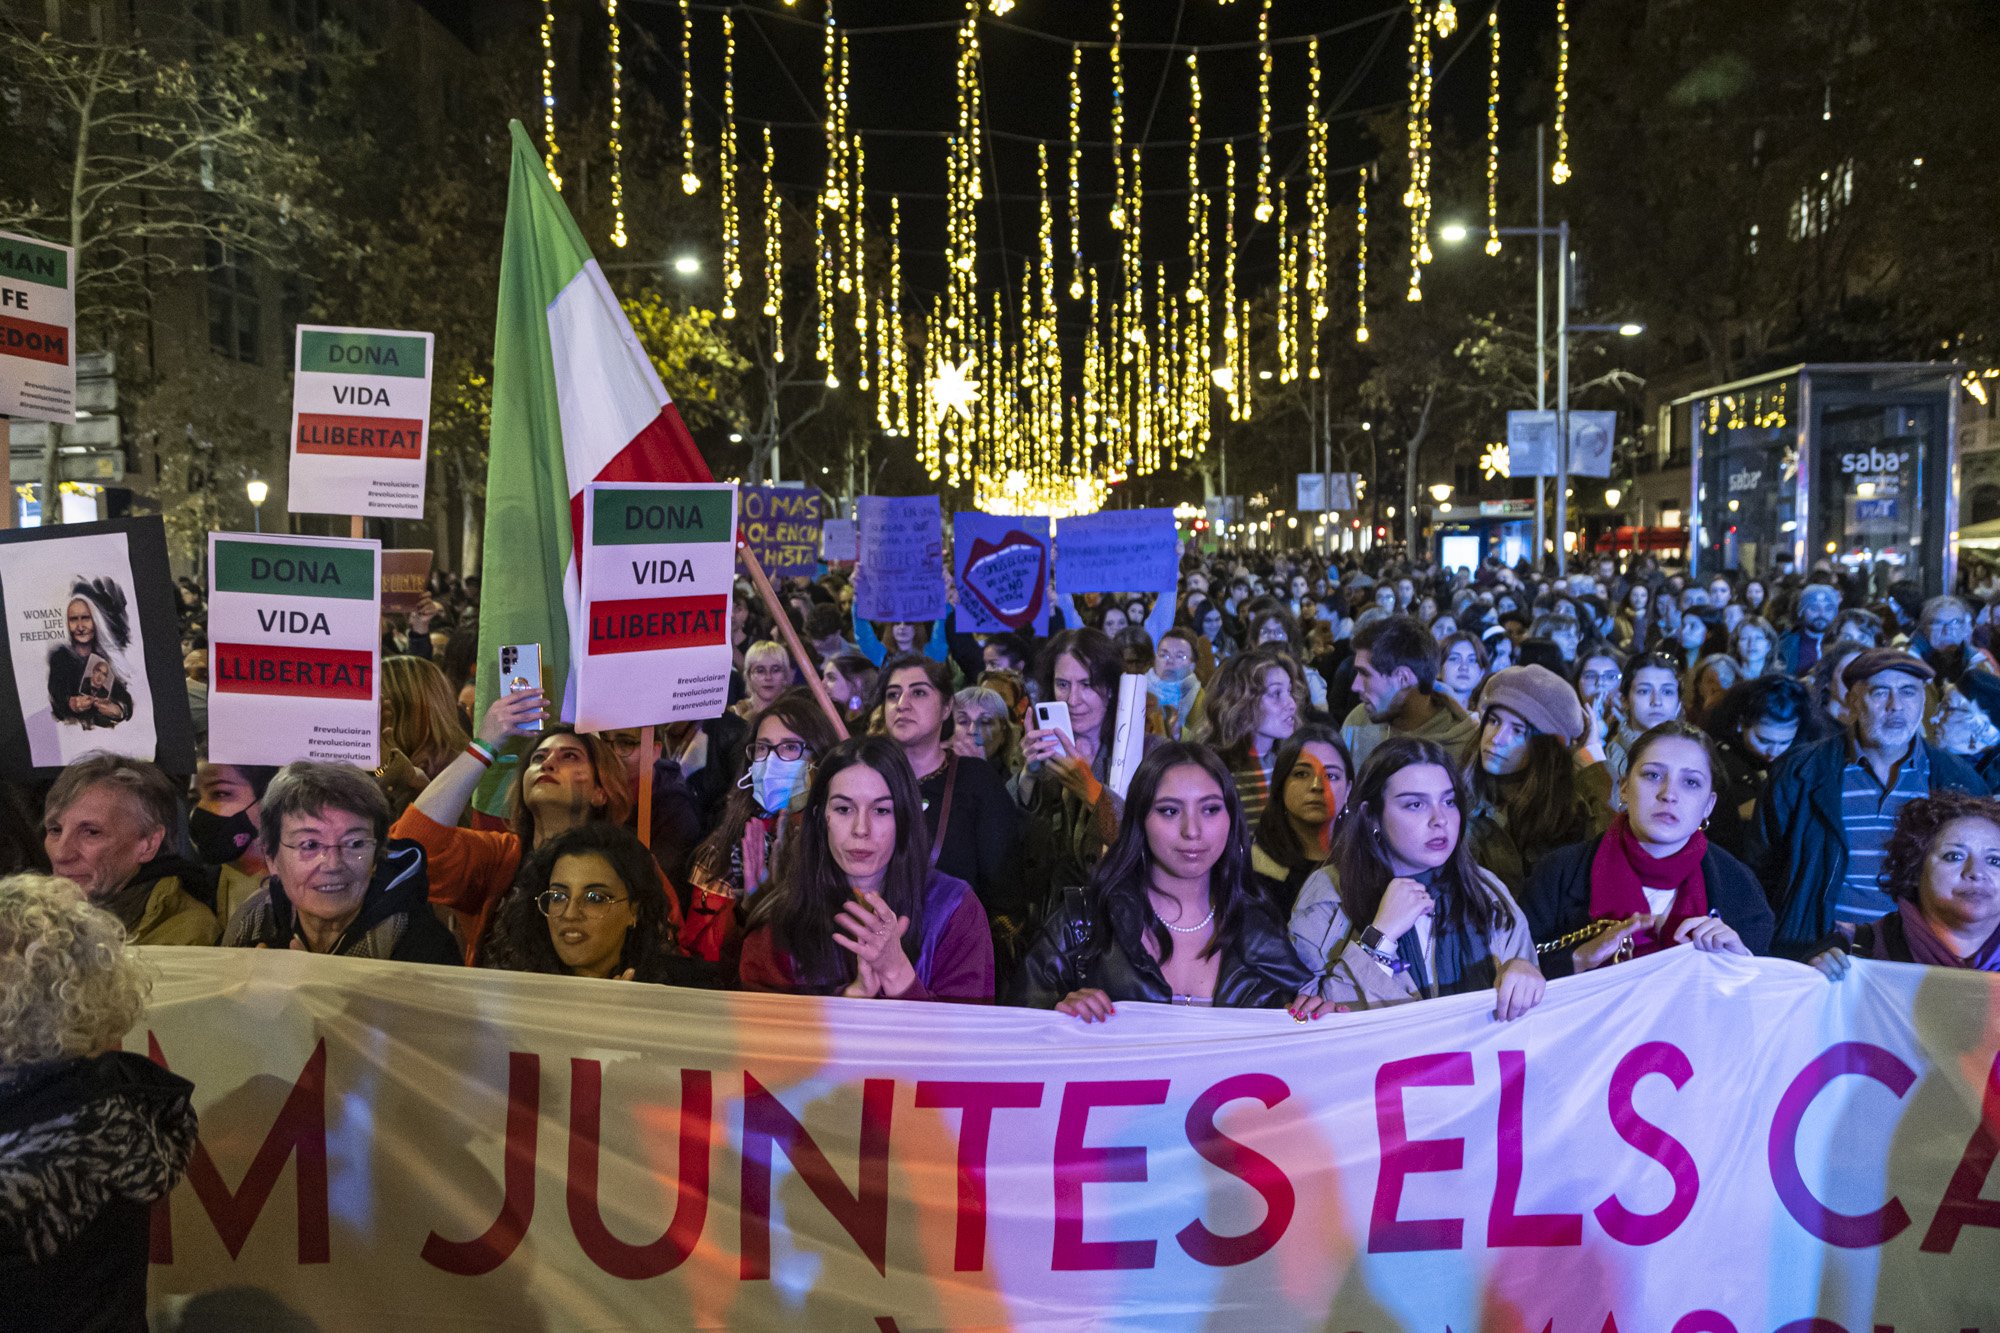 Les feministes tornen als carrers de Barcelona pel 25-N: "Que la justícia no dubti de les dones"